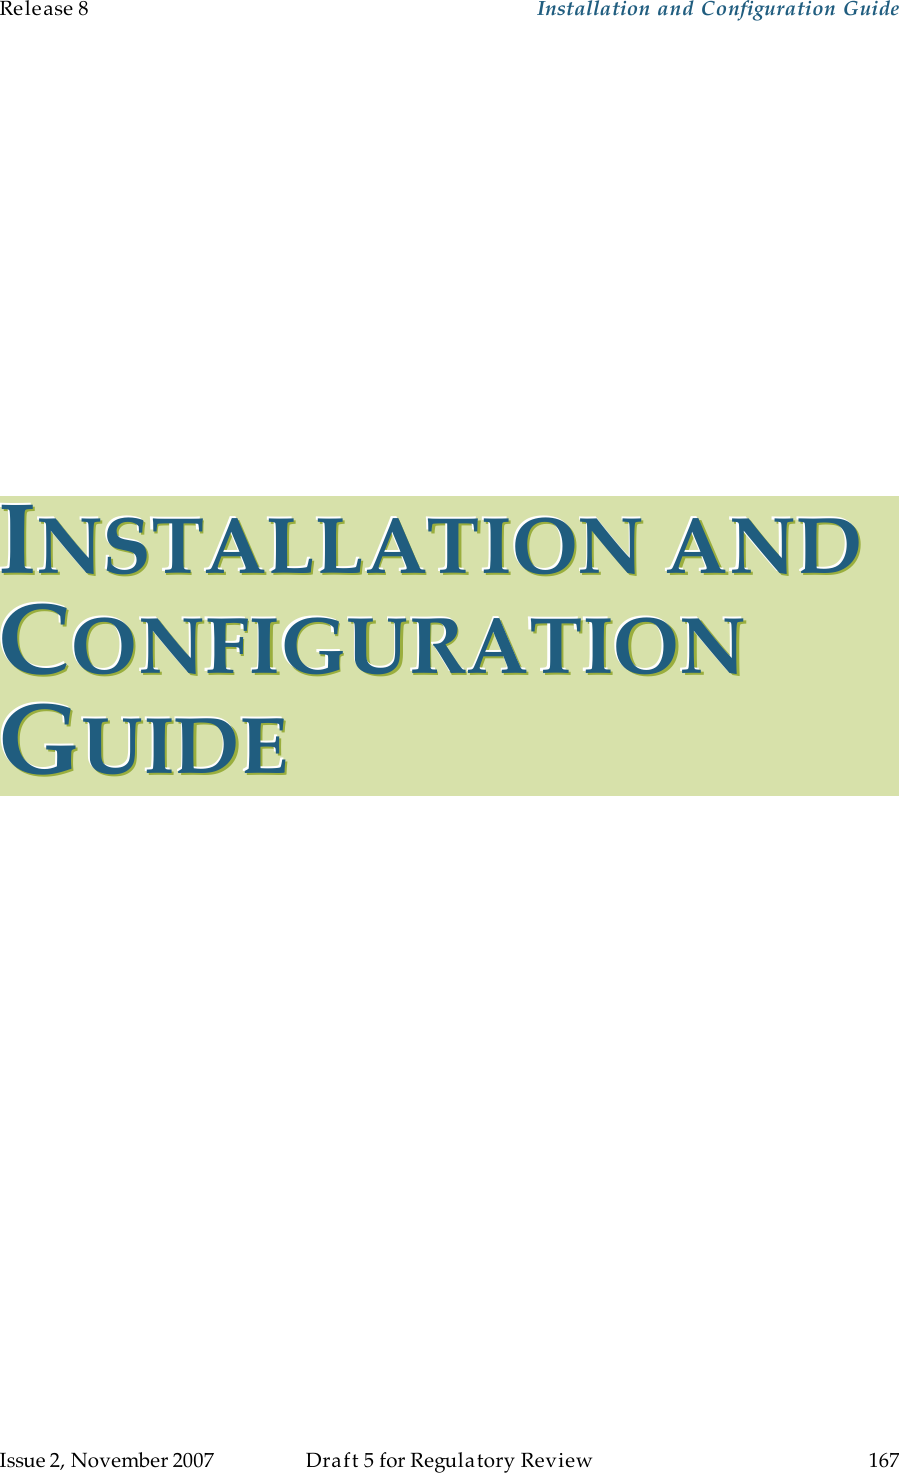 Release 8    Installation and Configuration Guide   Issue 2, November 2007  Draft 5 for Regulatory Review  167     IIINNNSSSTTTAAALLLLLLAAATTTIIIOOONNN   AAANNNDDD   CCCOOONNNFFFIIIGGGUUURRRAAATTTIIIOOONNN   GGGUUUIIIDDDEEE   